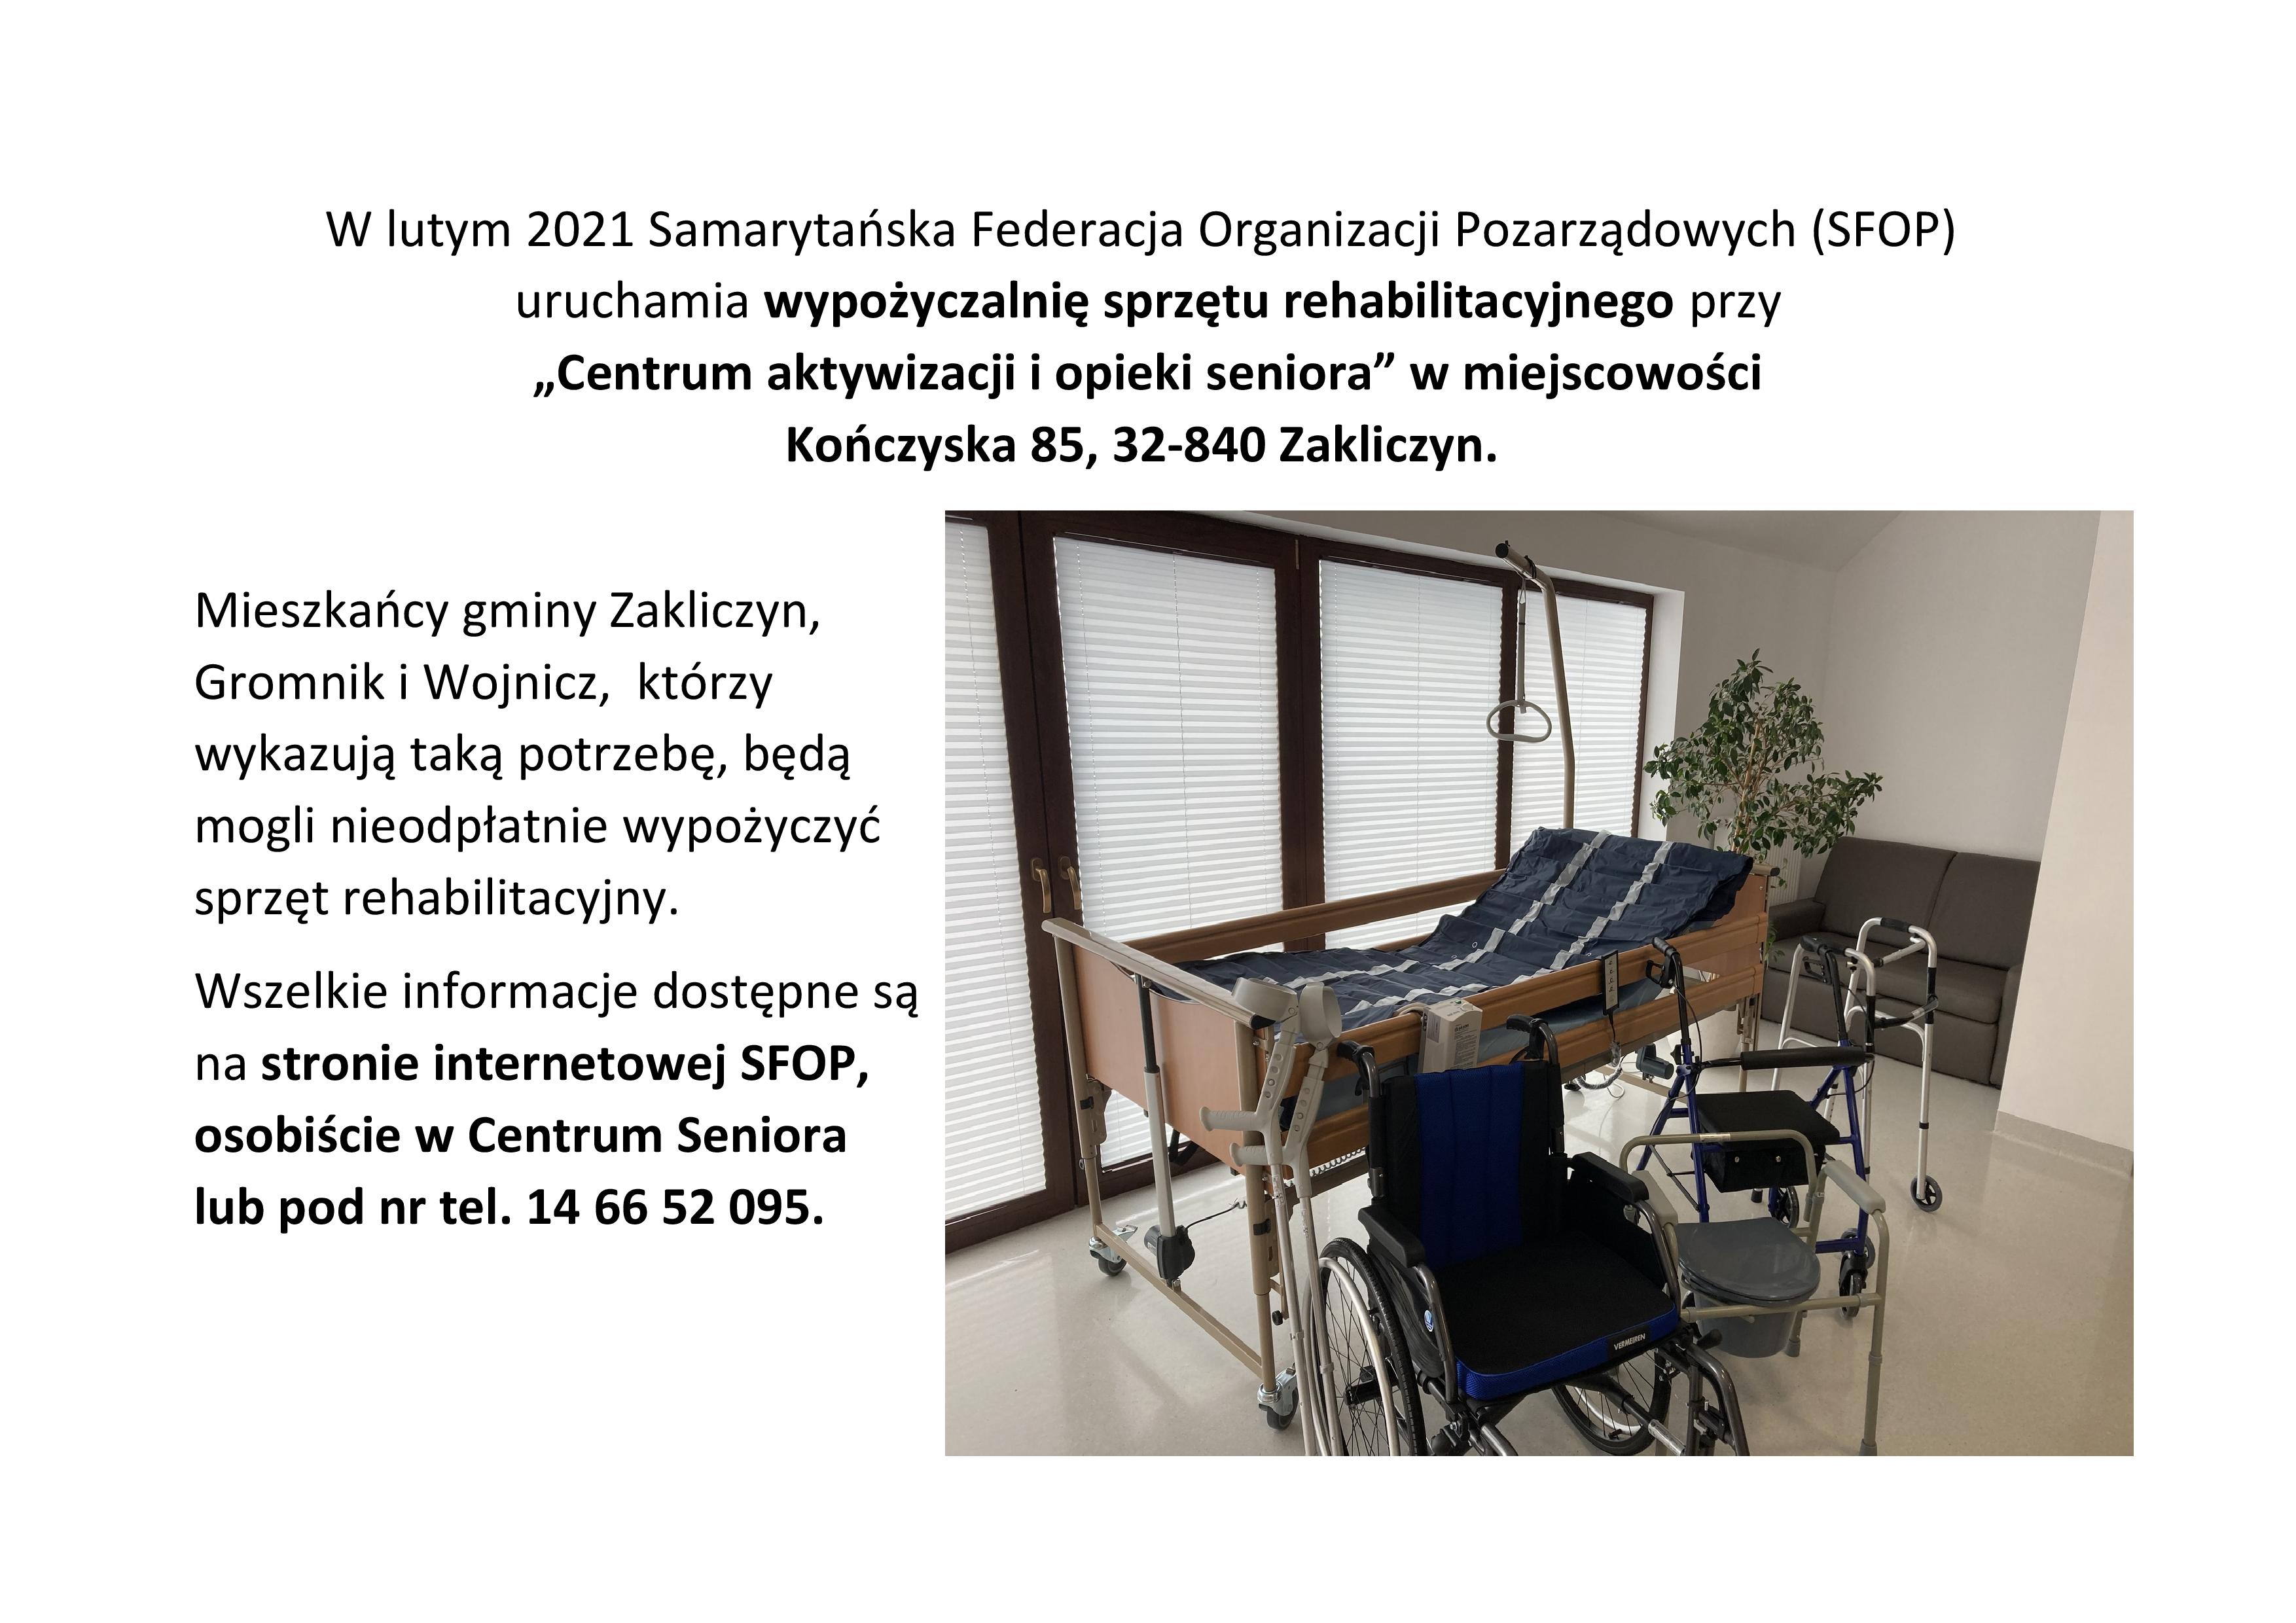 Informacja sprzet rehabilitacyjny parafie-page-001.jpg